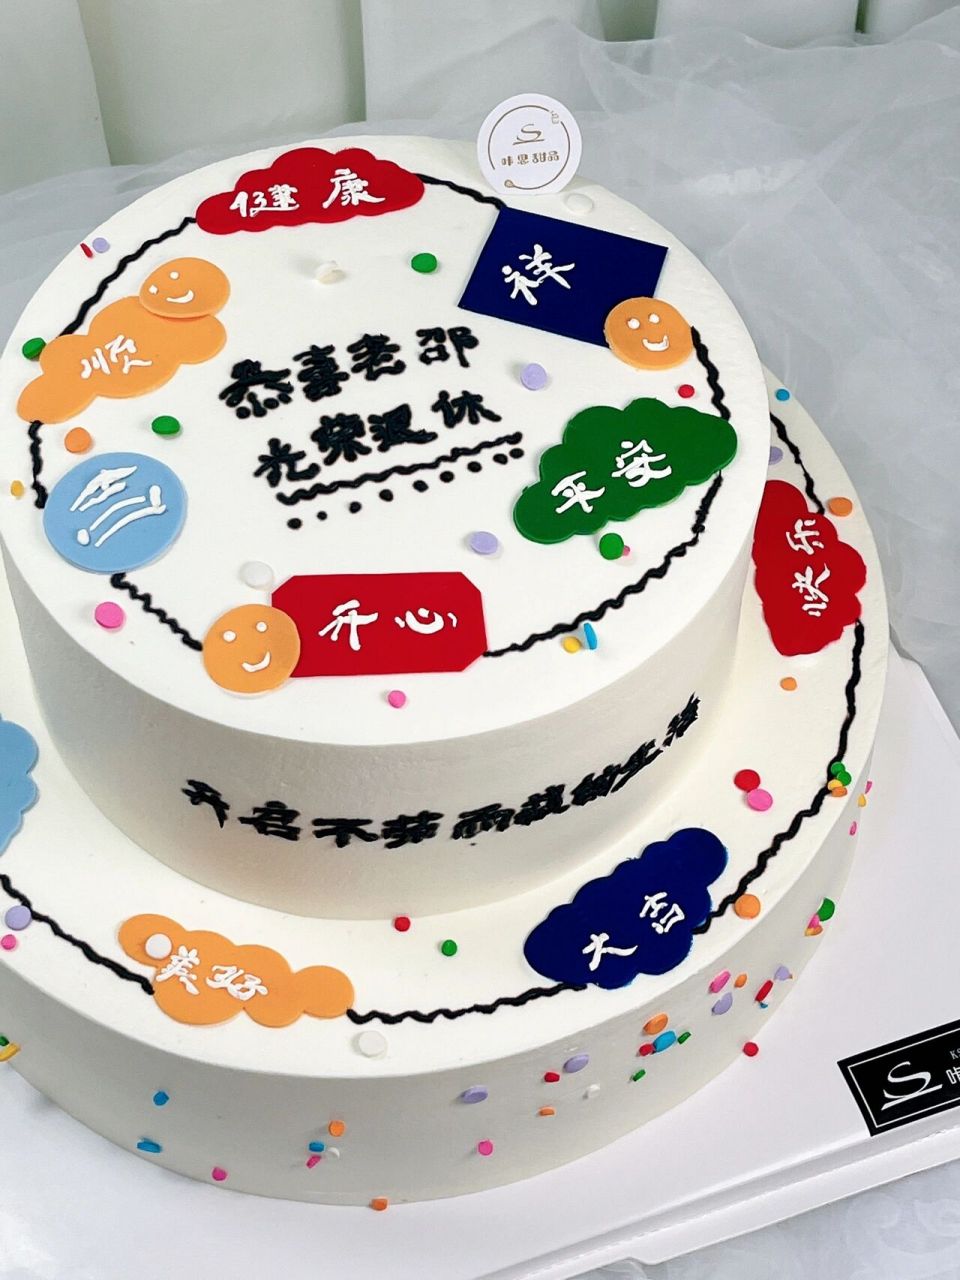 光荣退休动物奶油翻糖祝福语生日蛋糕 坐标上海杨浦